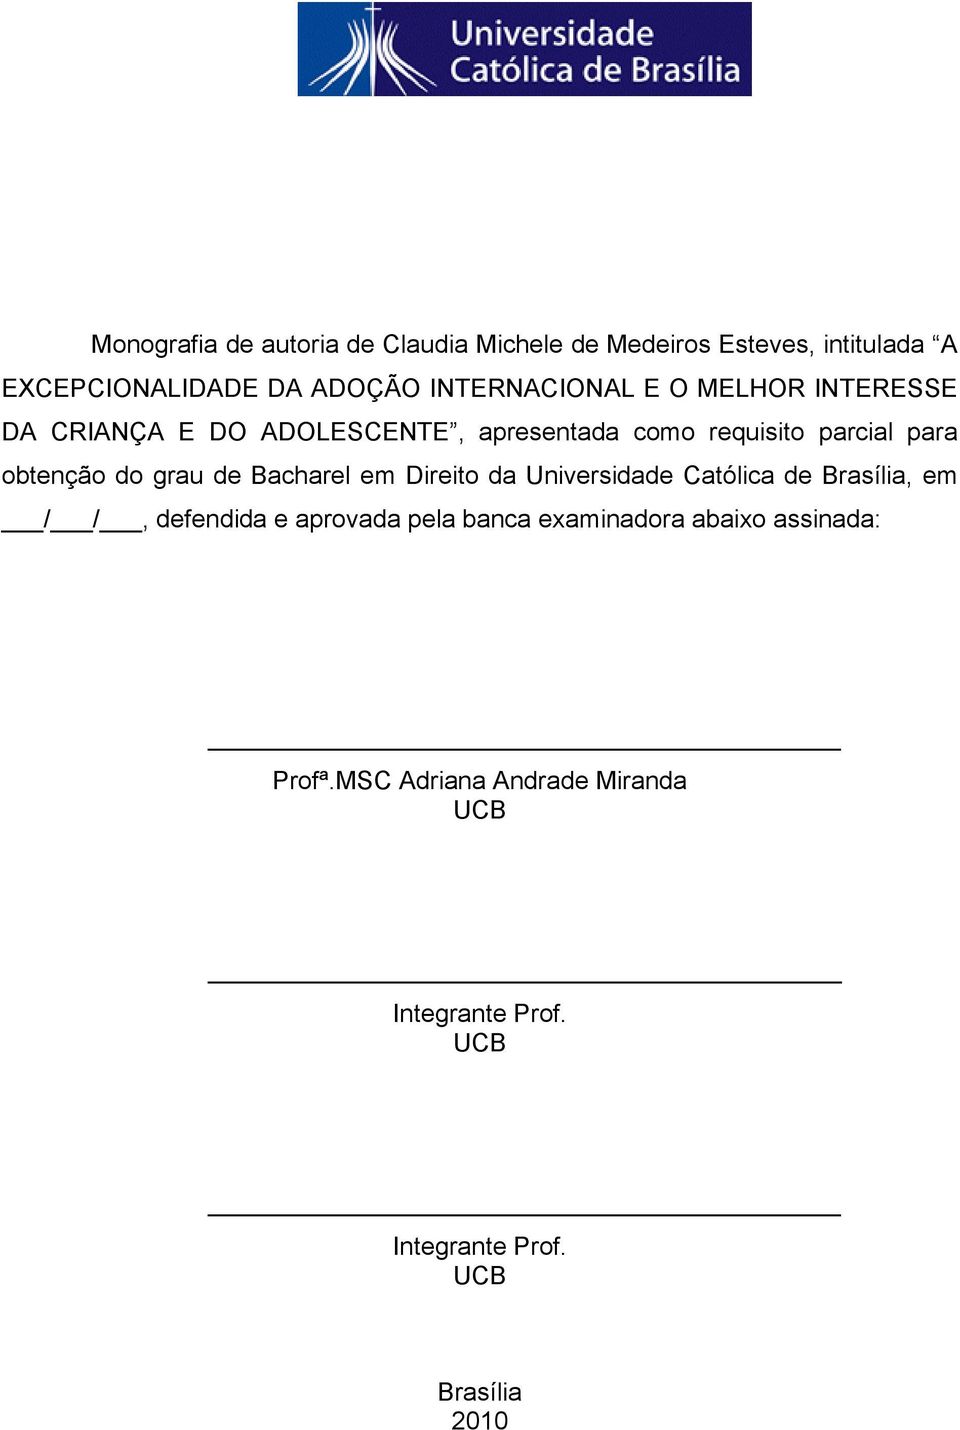 obtenção do grau de Bacharel em Direito da Universidade Católica de Brasília, em / /, defendida e aprovada pela